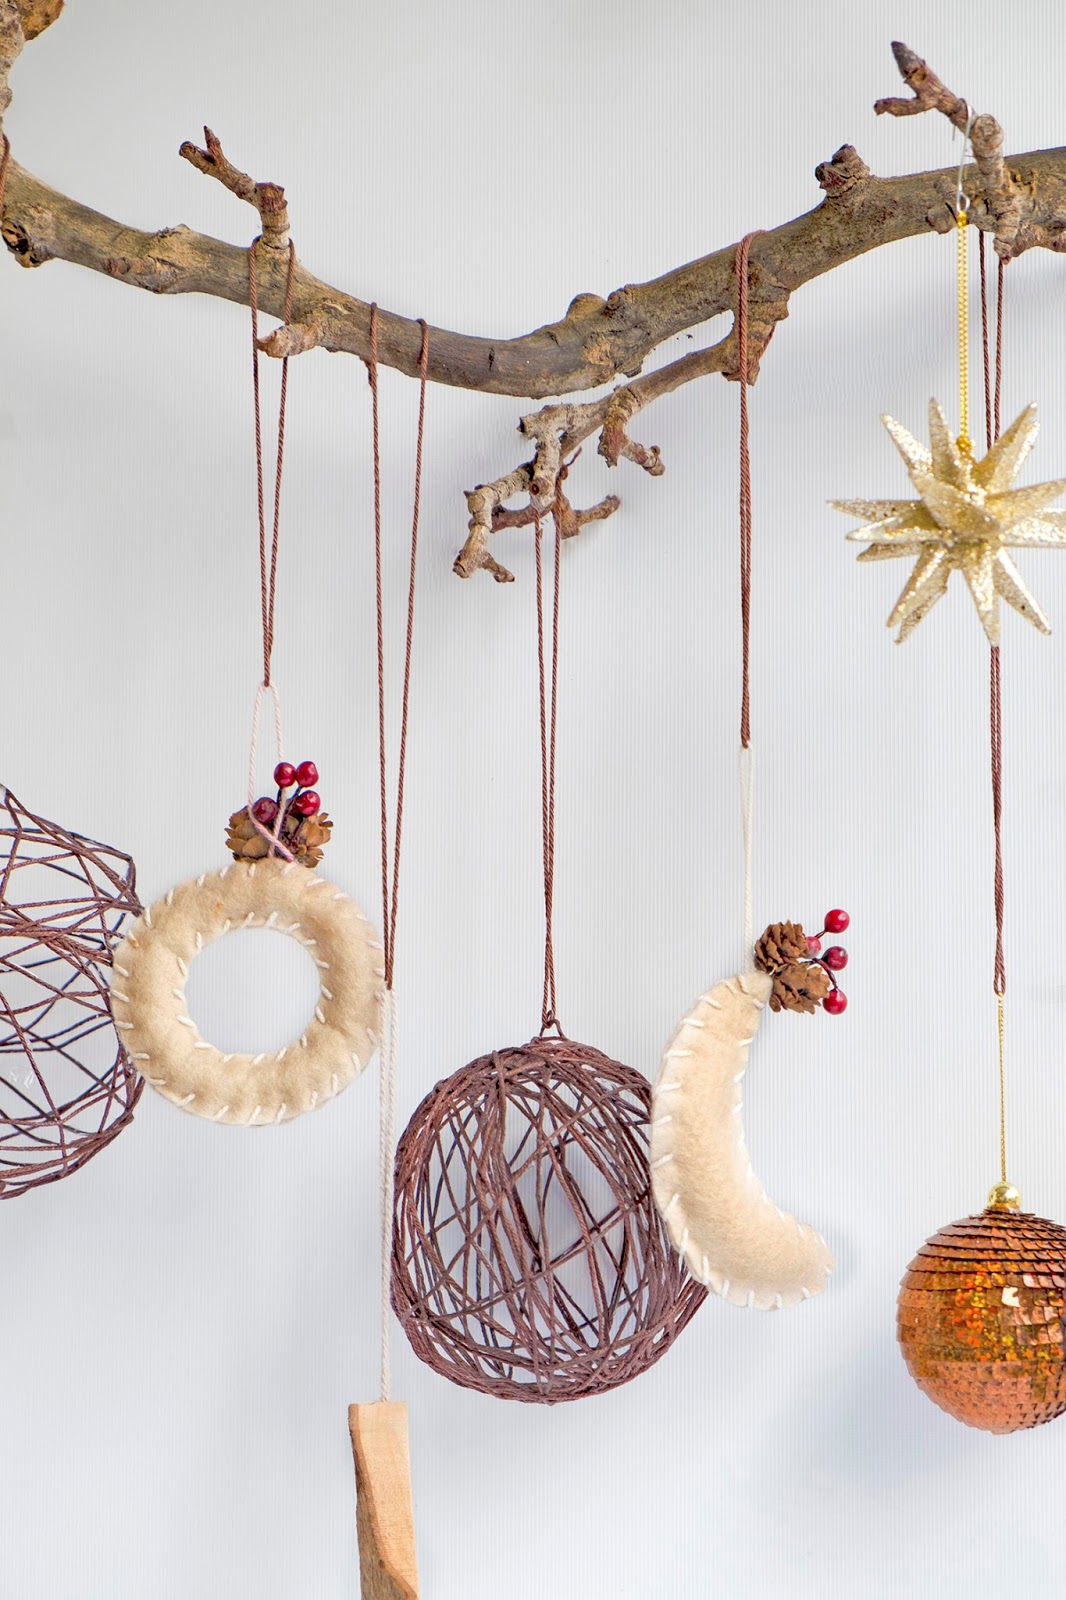 Ongebruikt Zelf kerstballen maken van wol - Diy – ElsaRblog KK-47